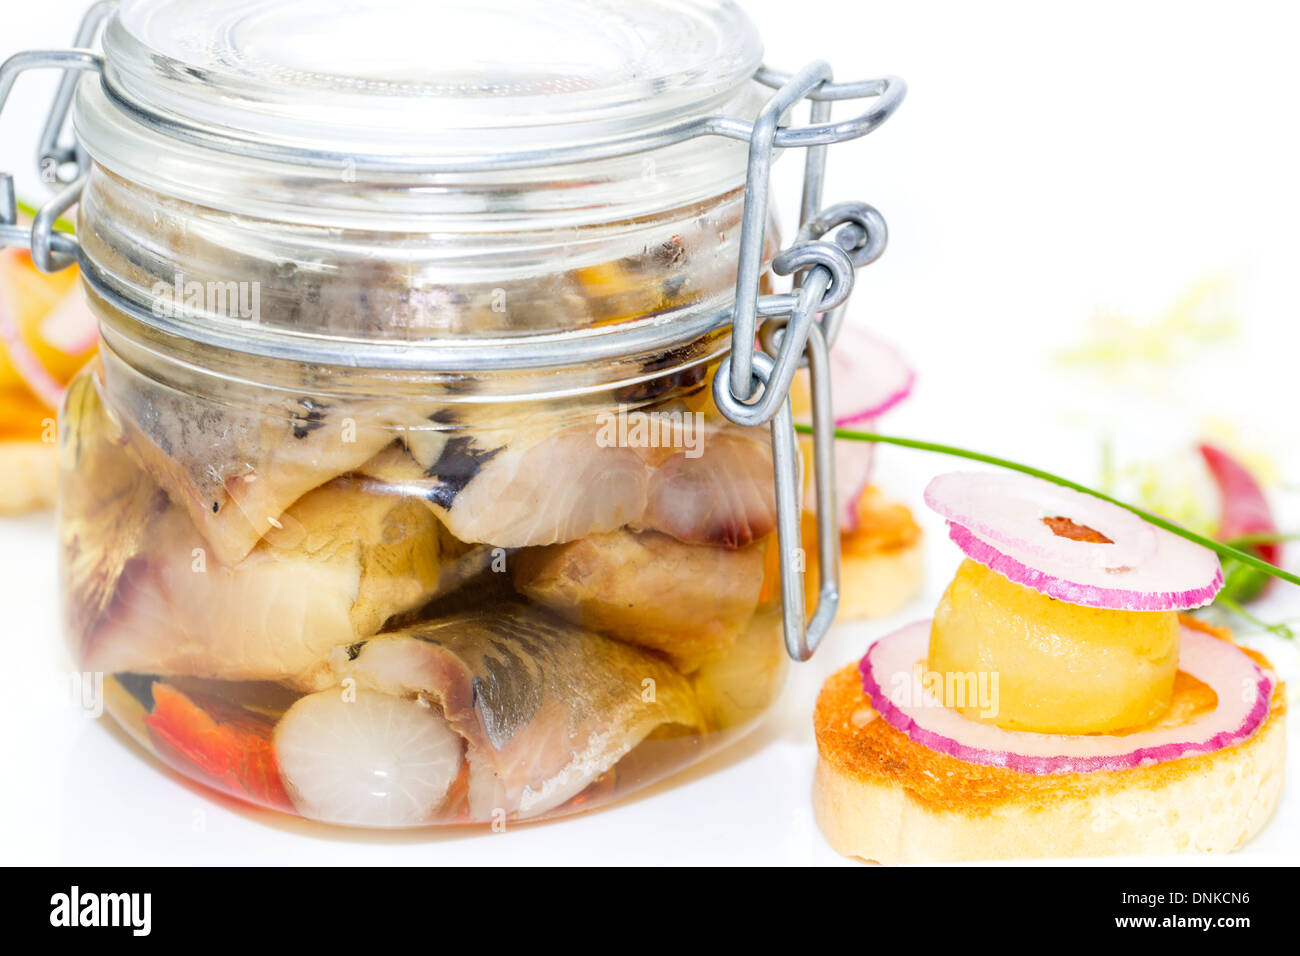 eingelegter Hering in ein Glas mit Kartoffel Häppchen Stockfotografie -  Alamy